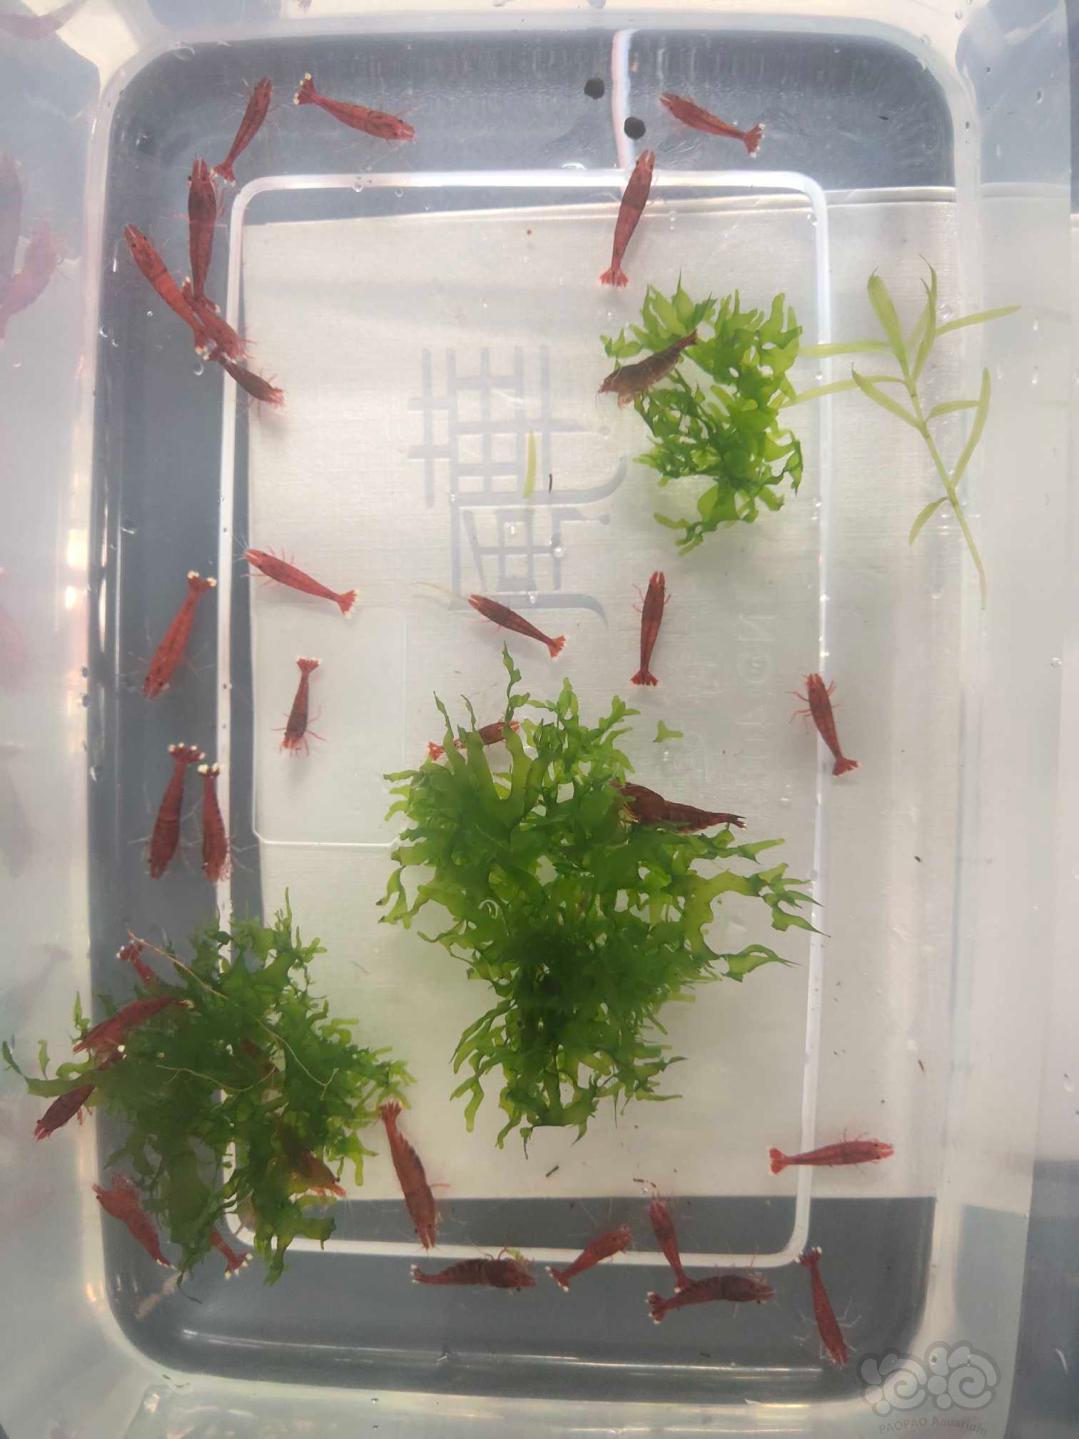 【虾】2020-09-15#RMB拍卖全红水晶虾一份38只-图5